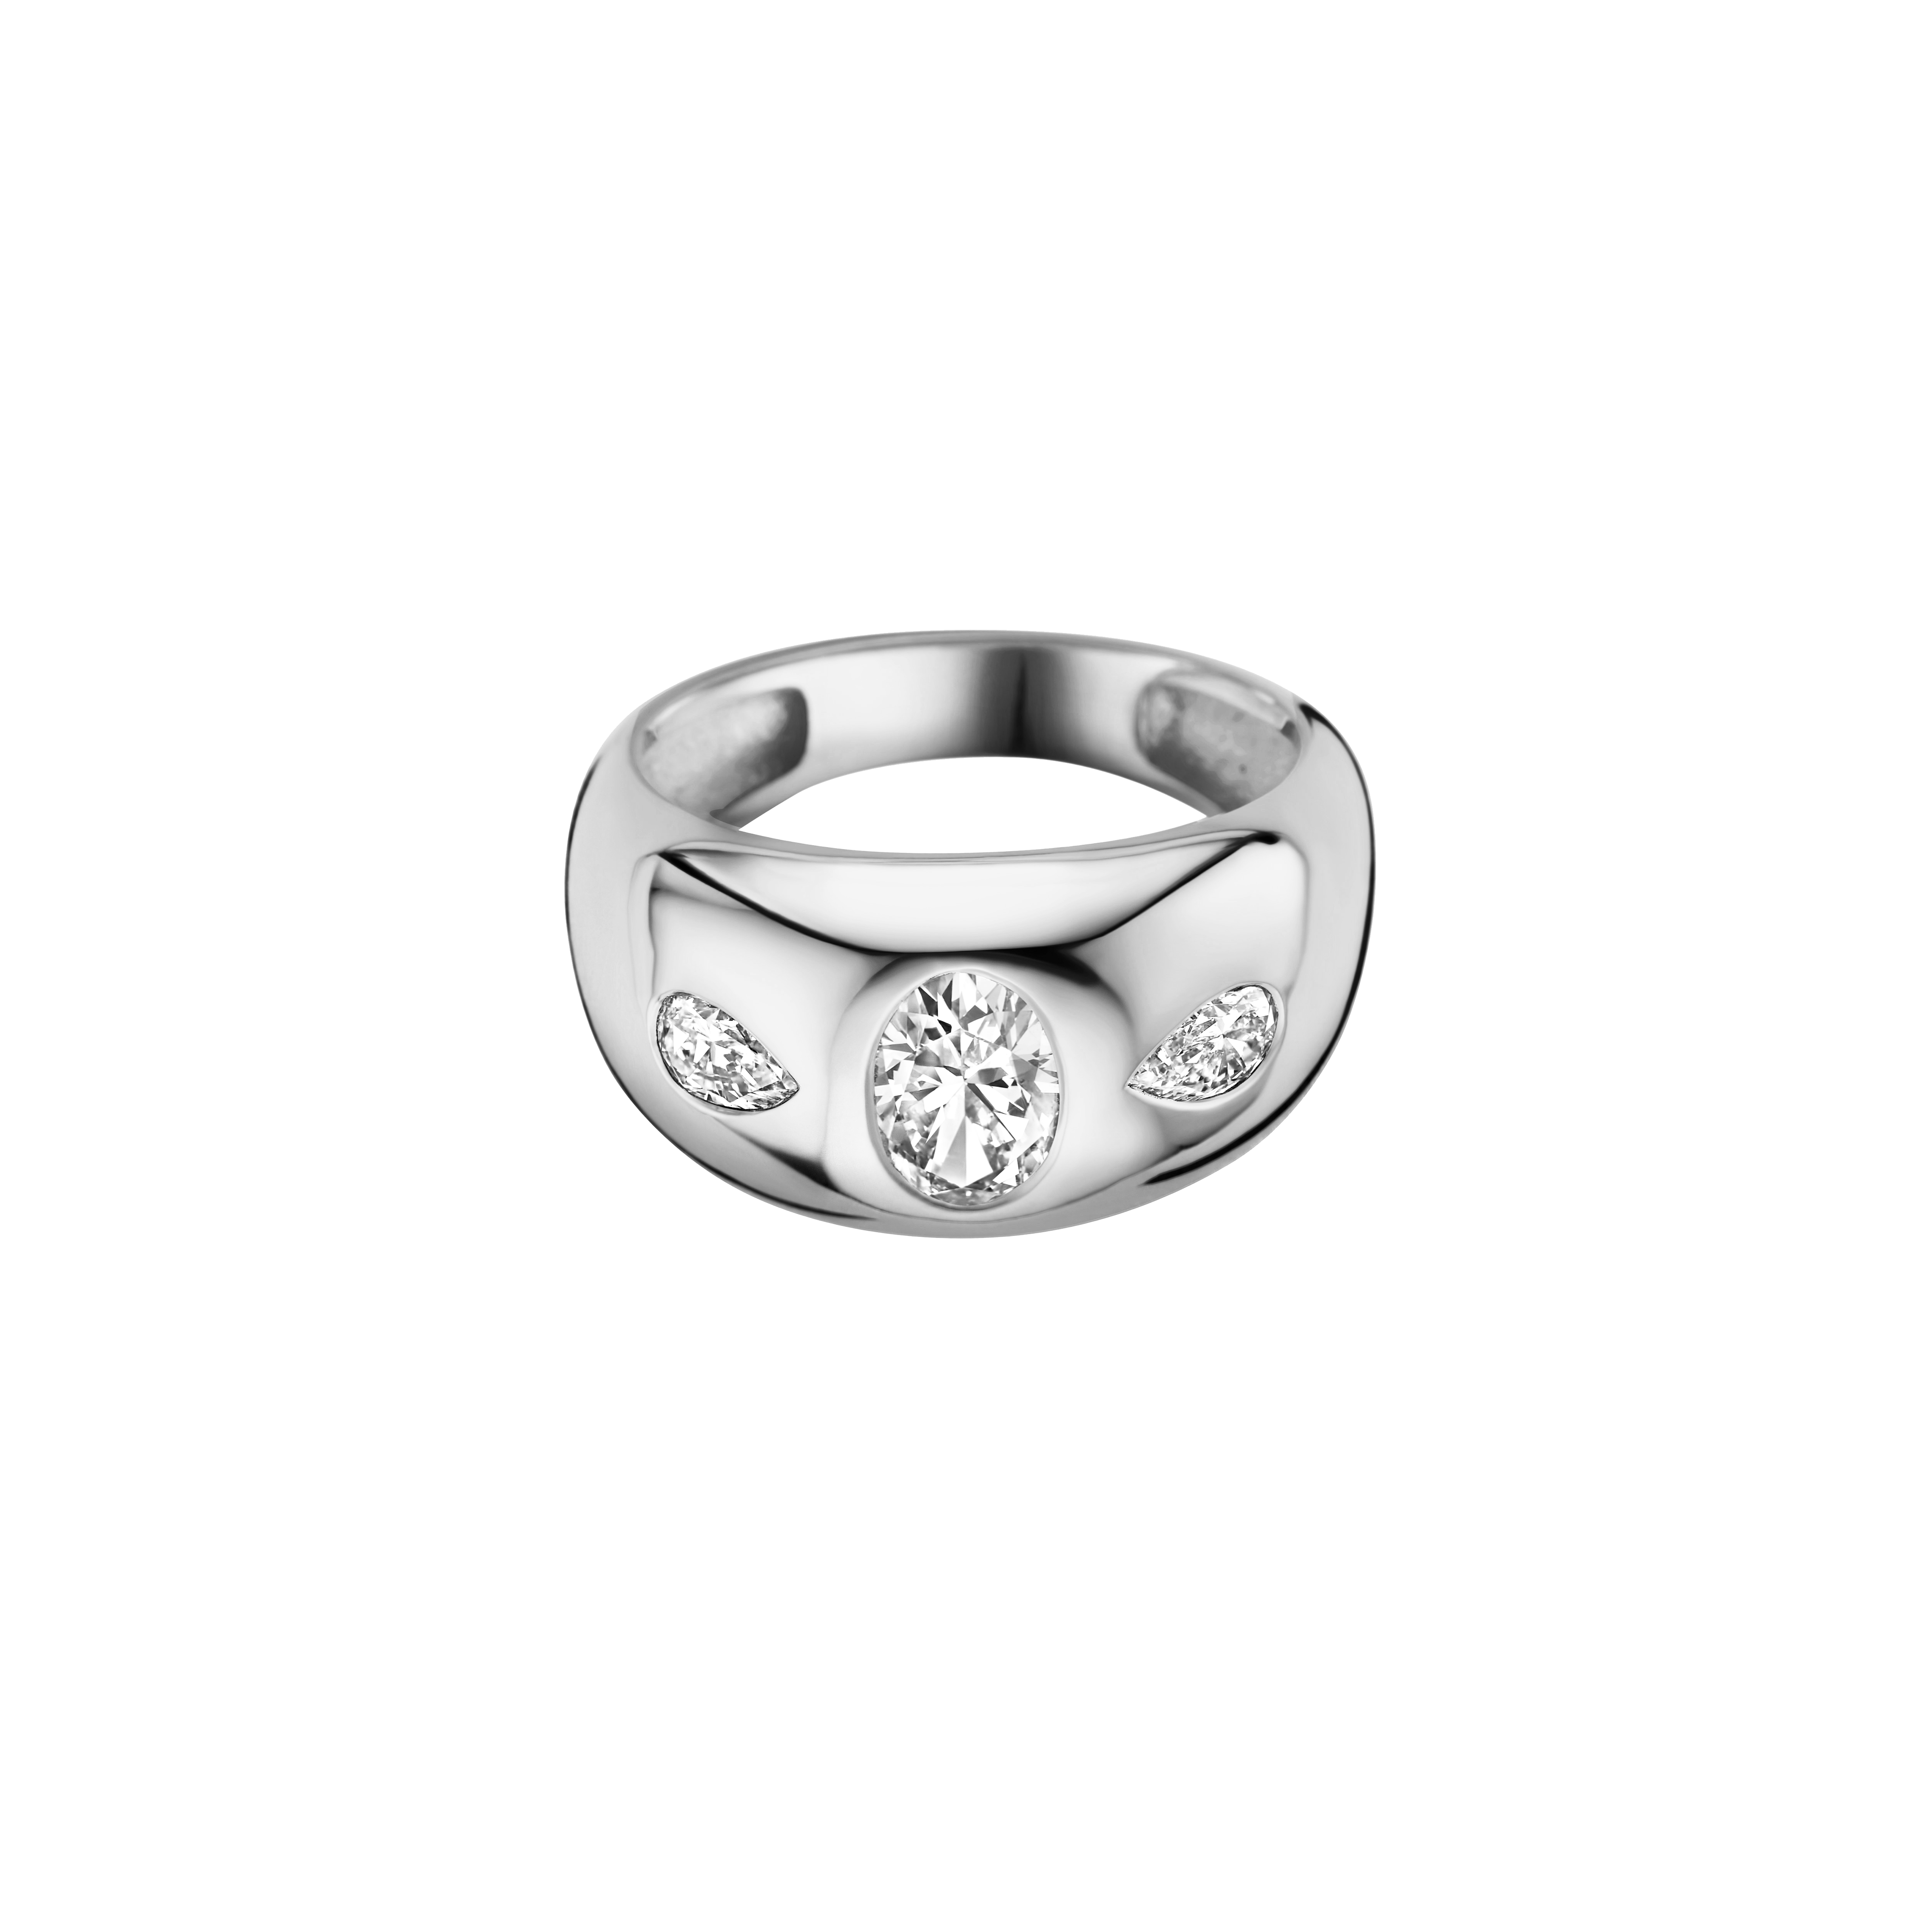 Simone Engagement ring packshot - white gold 